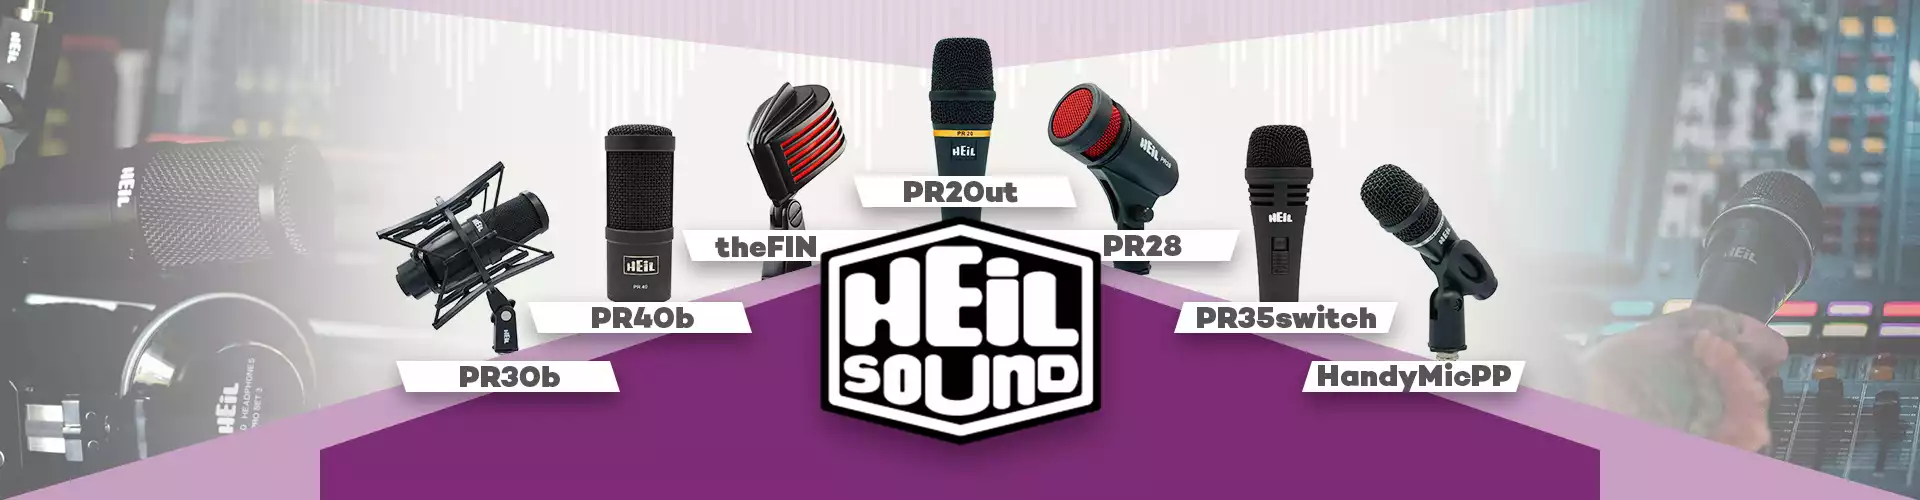 Heil Sound                                                                                                                                                                                                                                                     